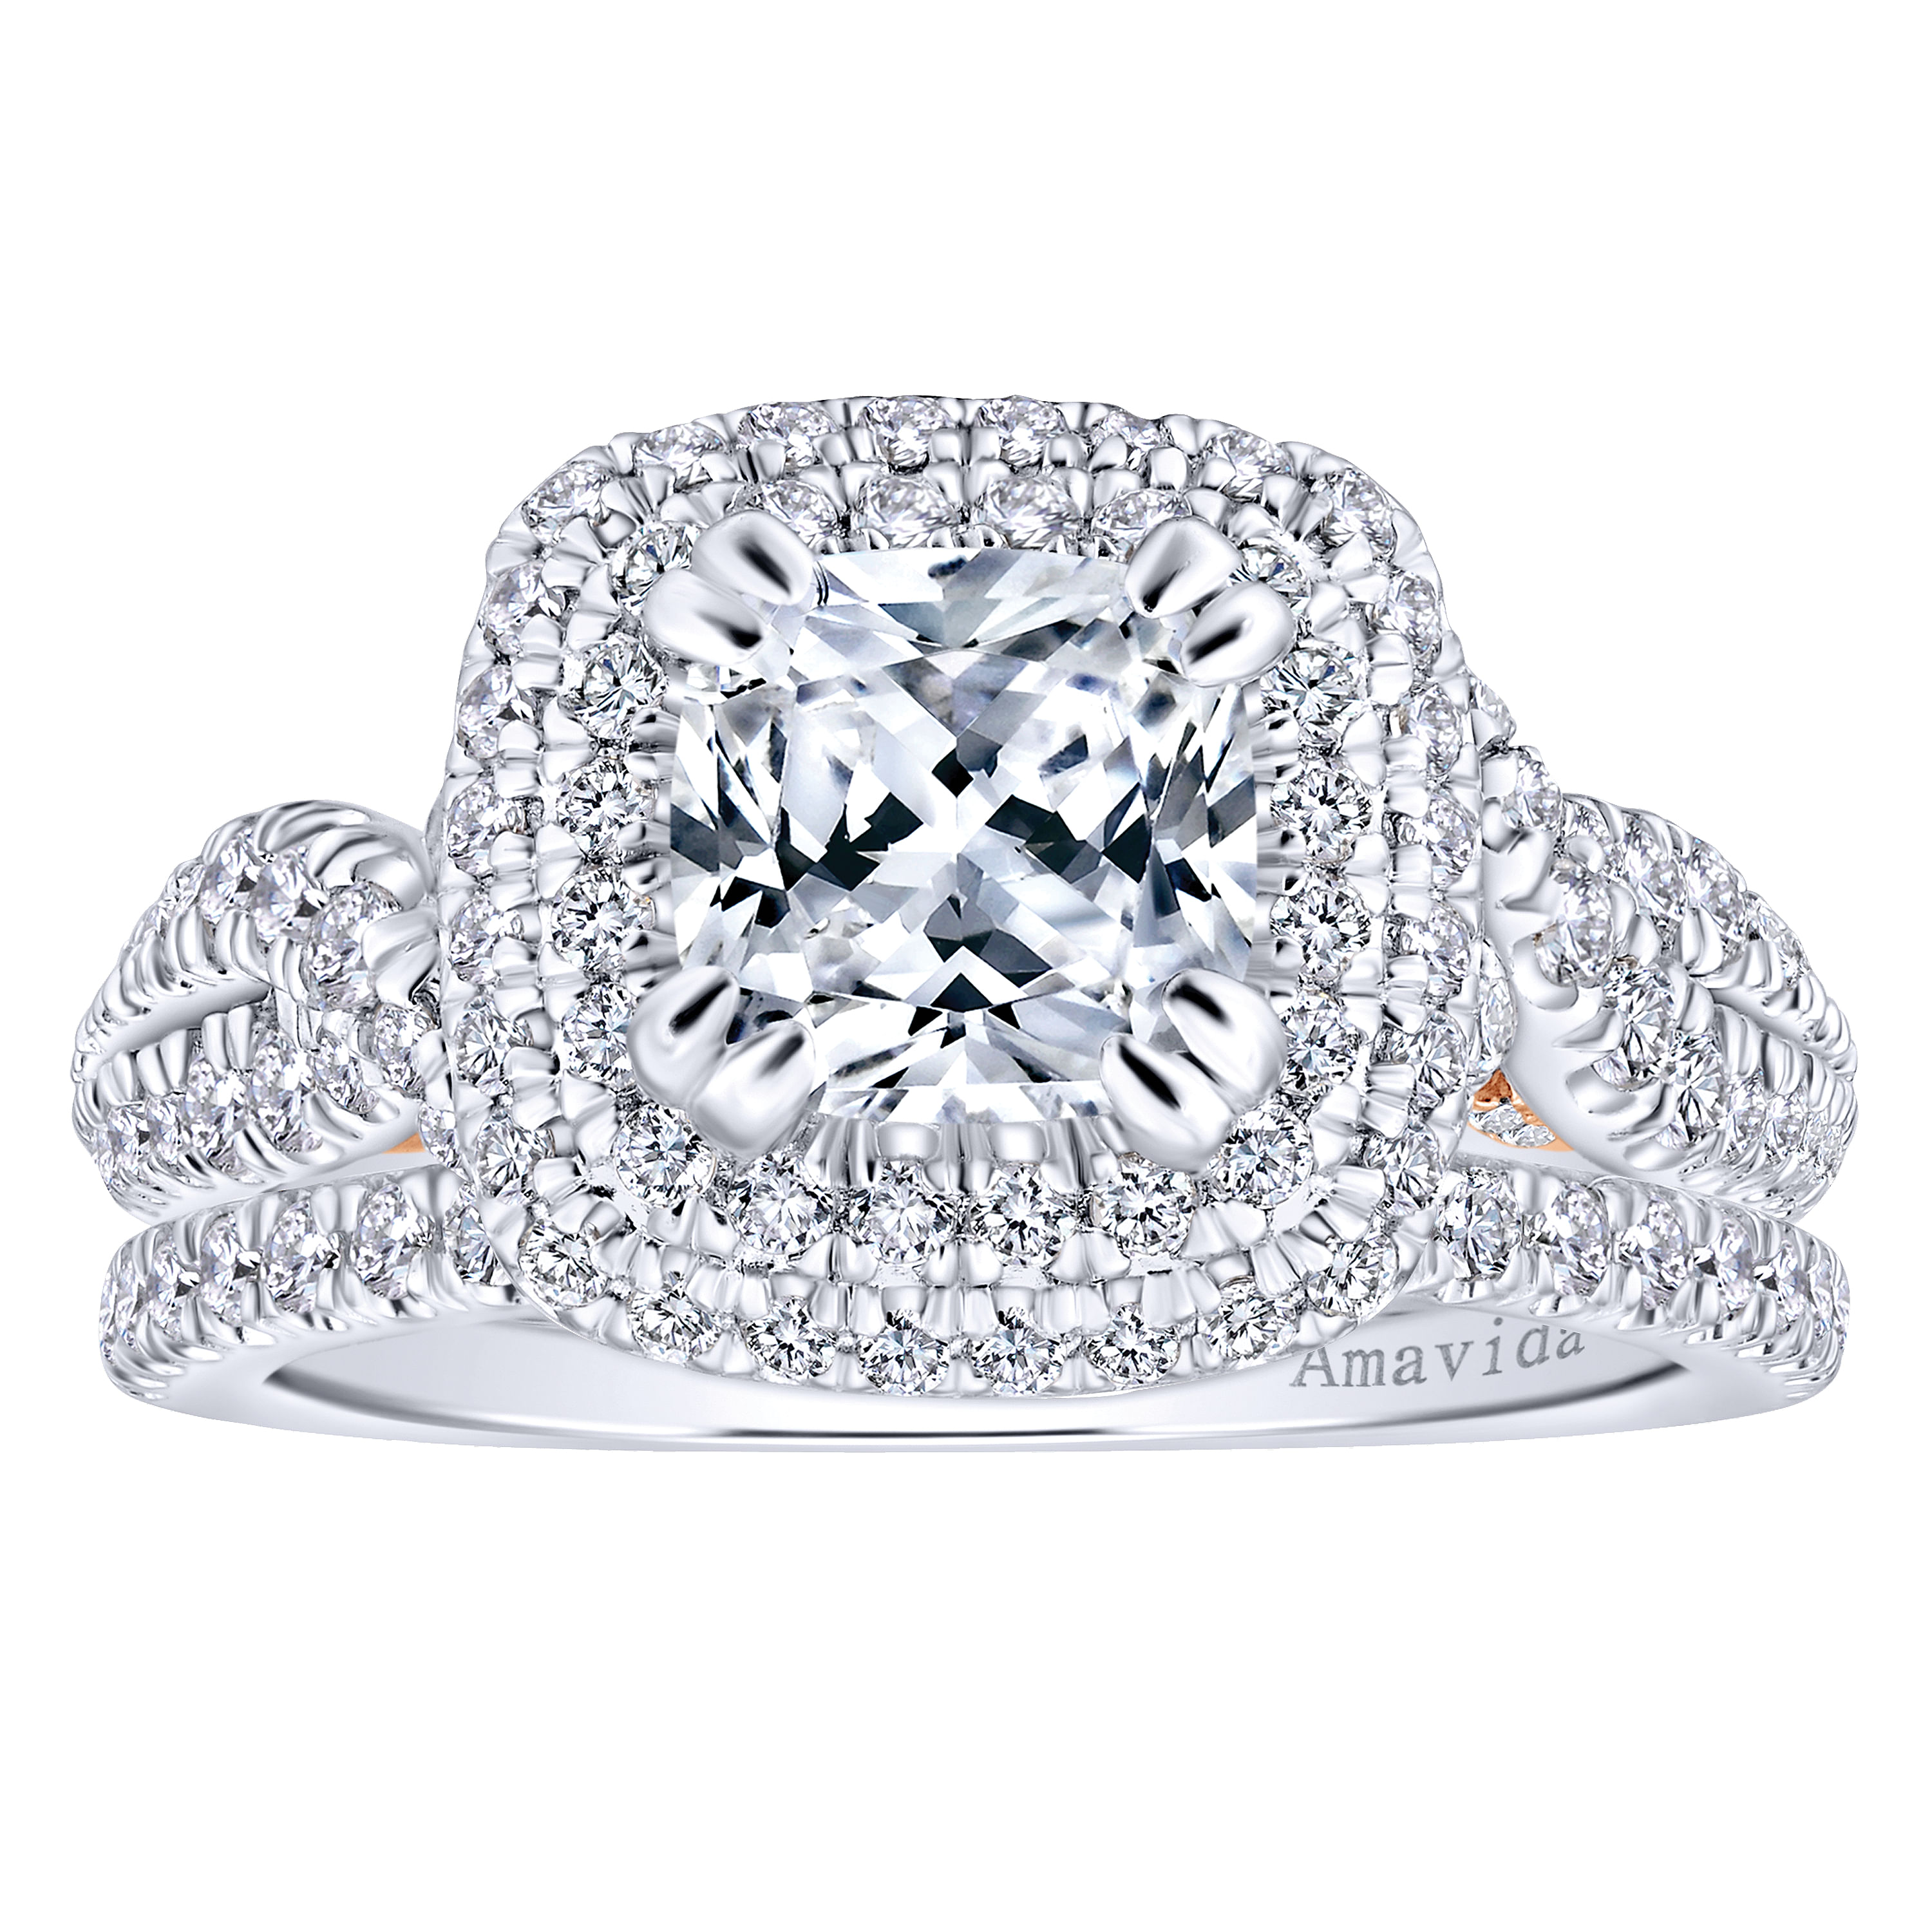 18K White-Rose Gold Cushion Double Halo Diamond Engagement Ring